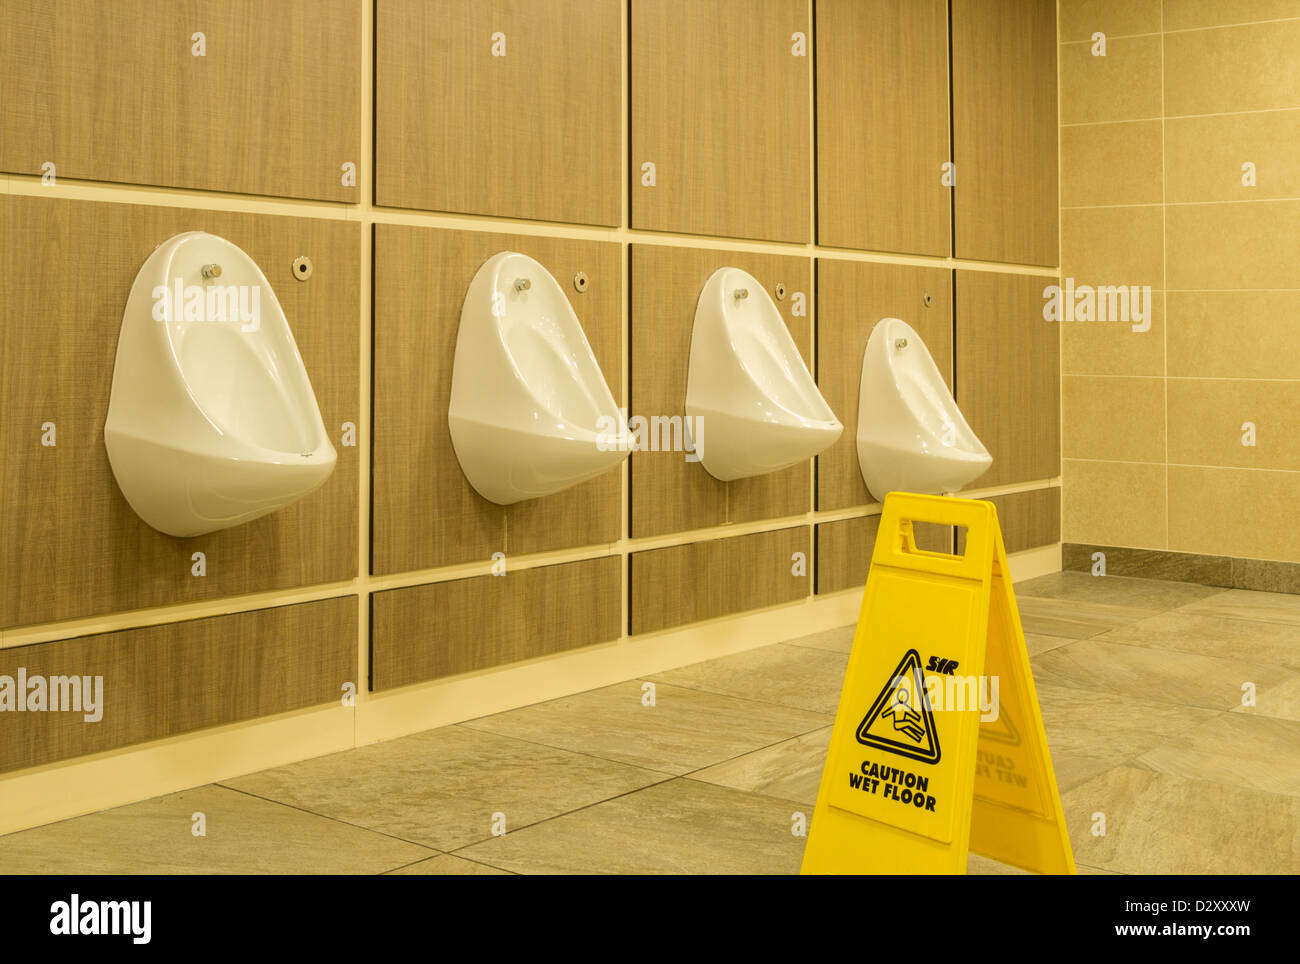 Hilera de urinarios y piso mojado firmar en los aseos Foto de stock